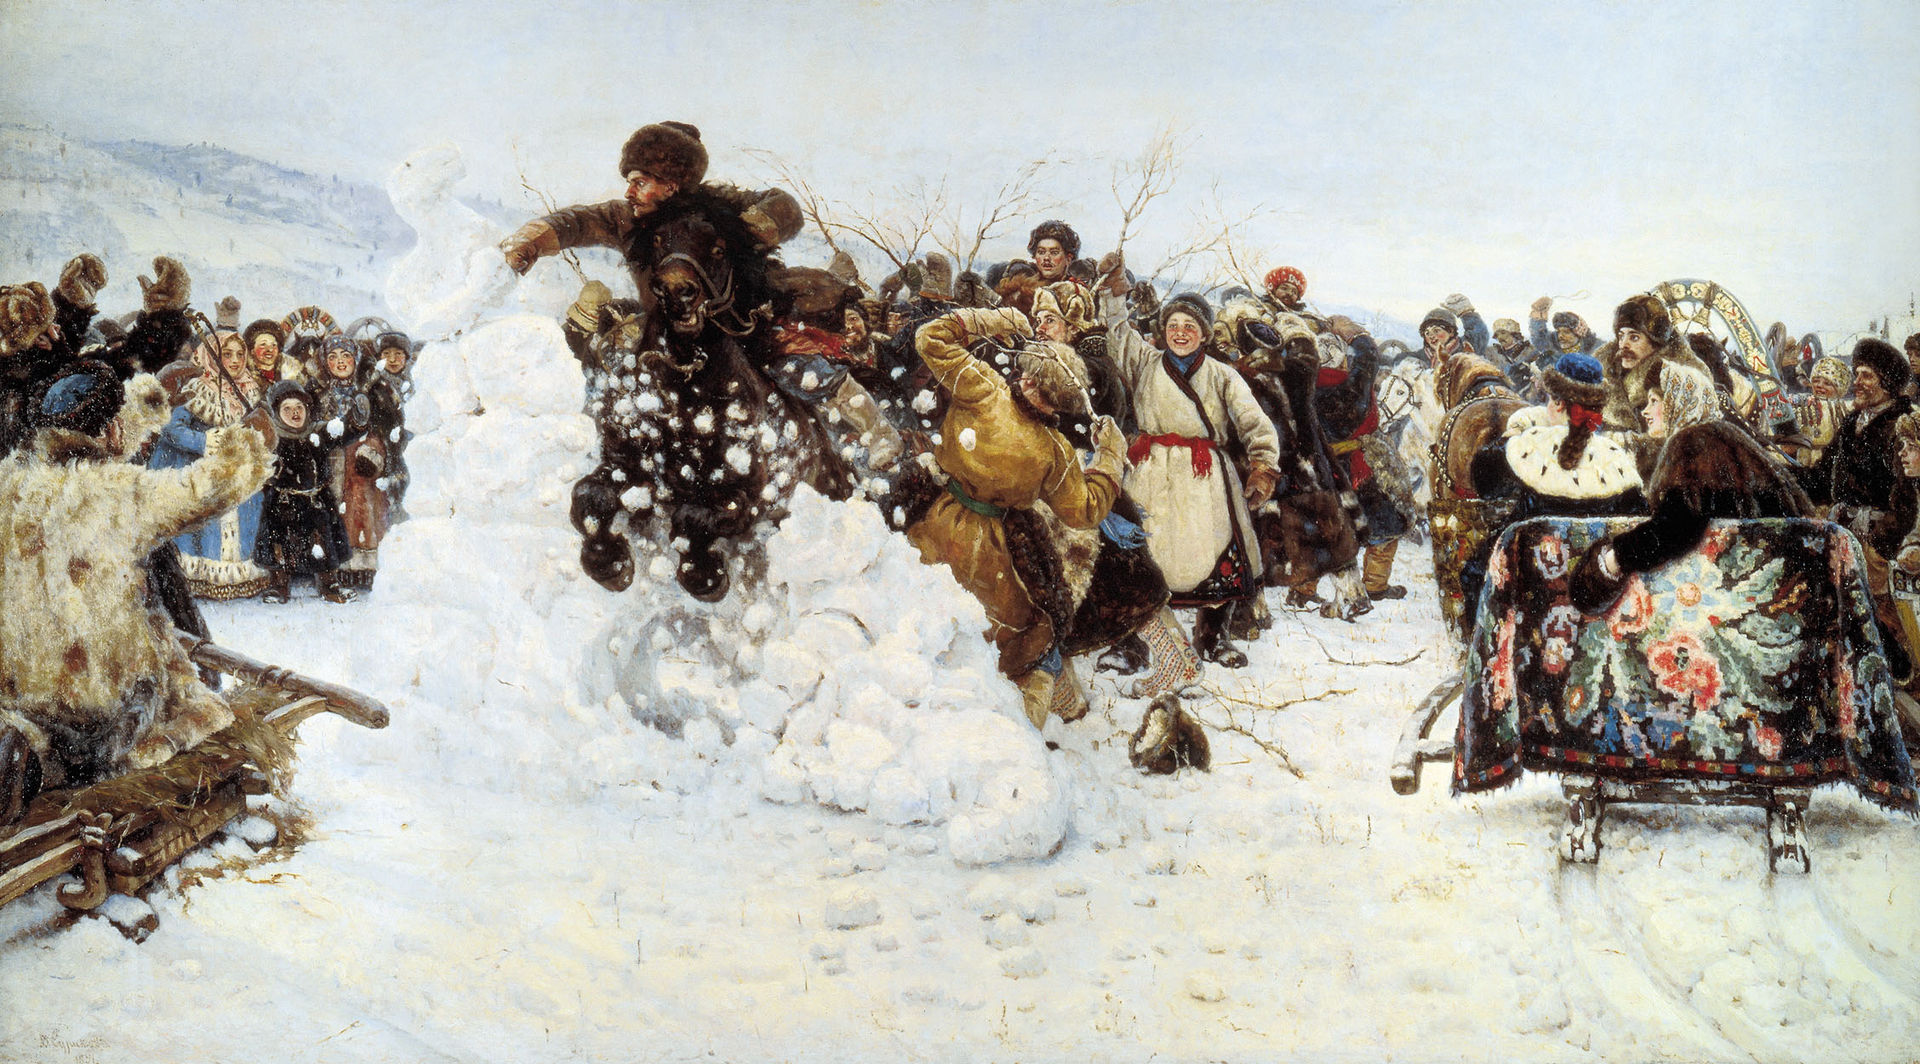 Взятие снежного городка, Суриков, 1891